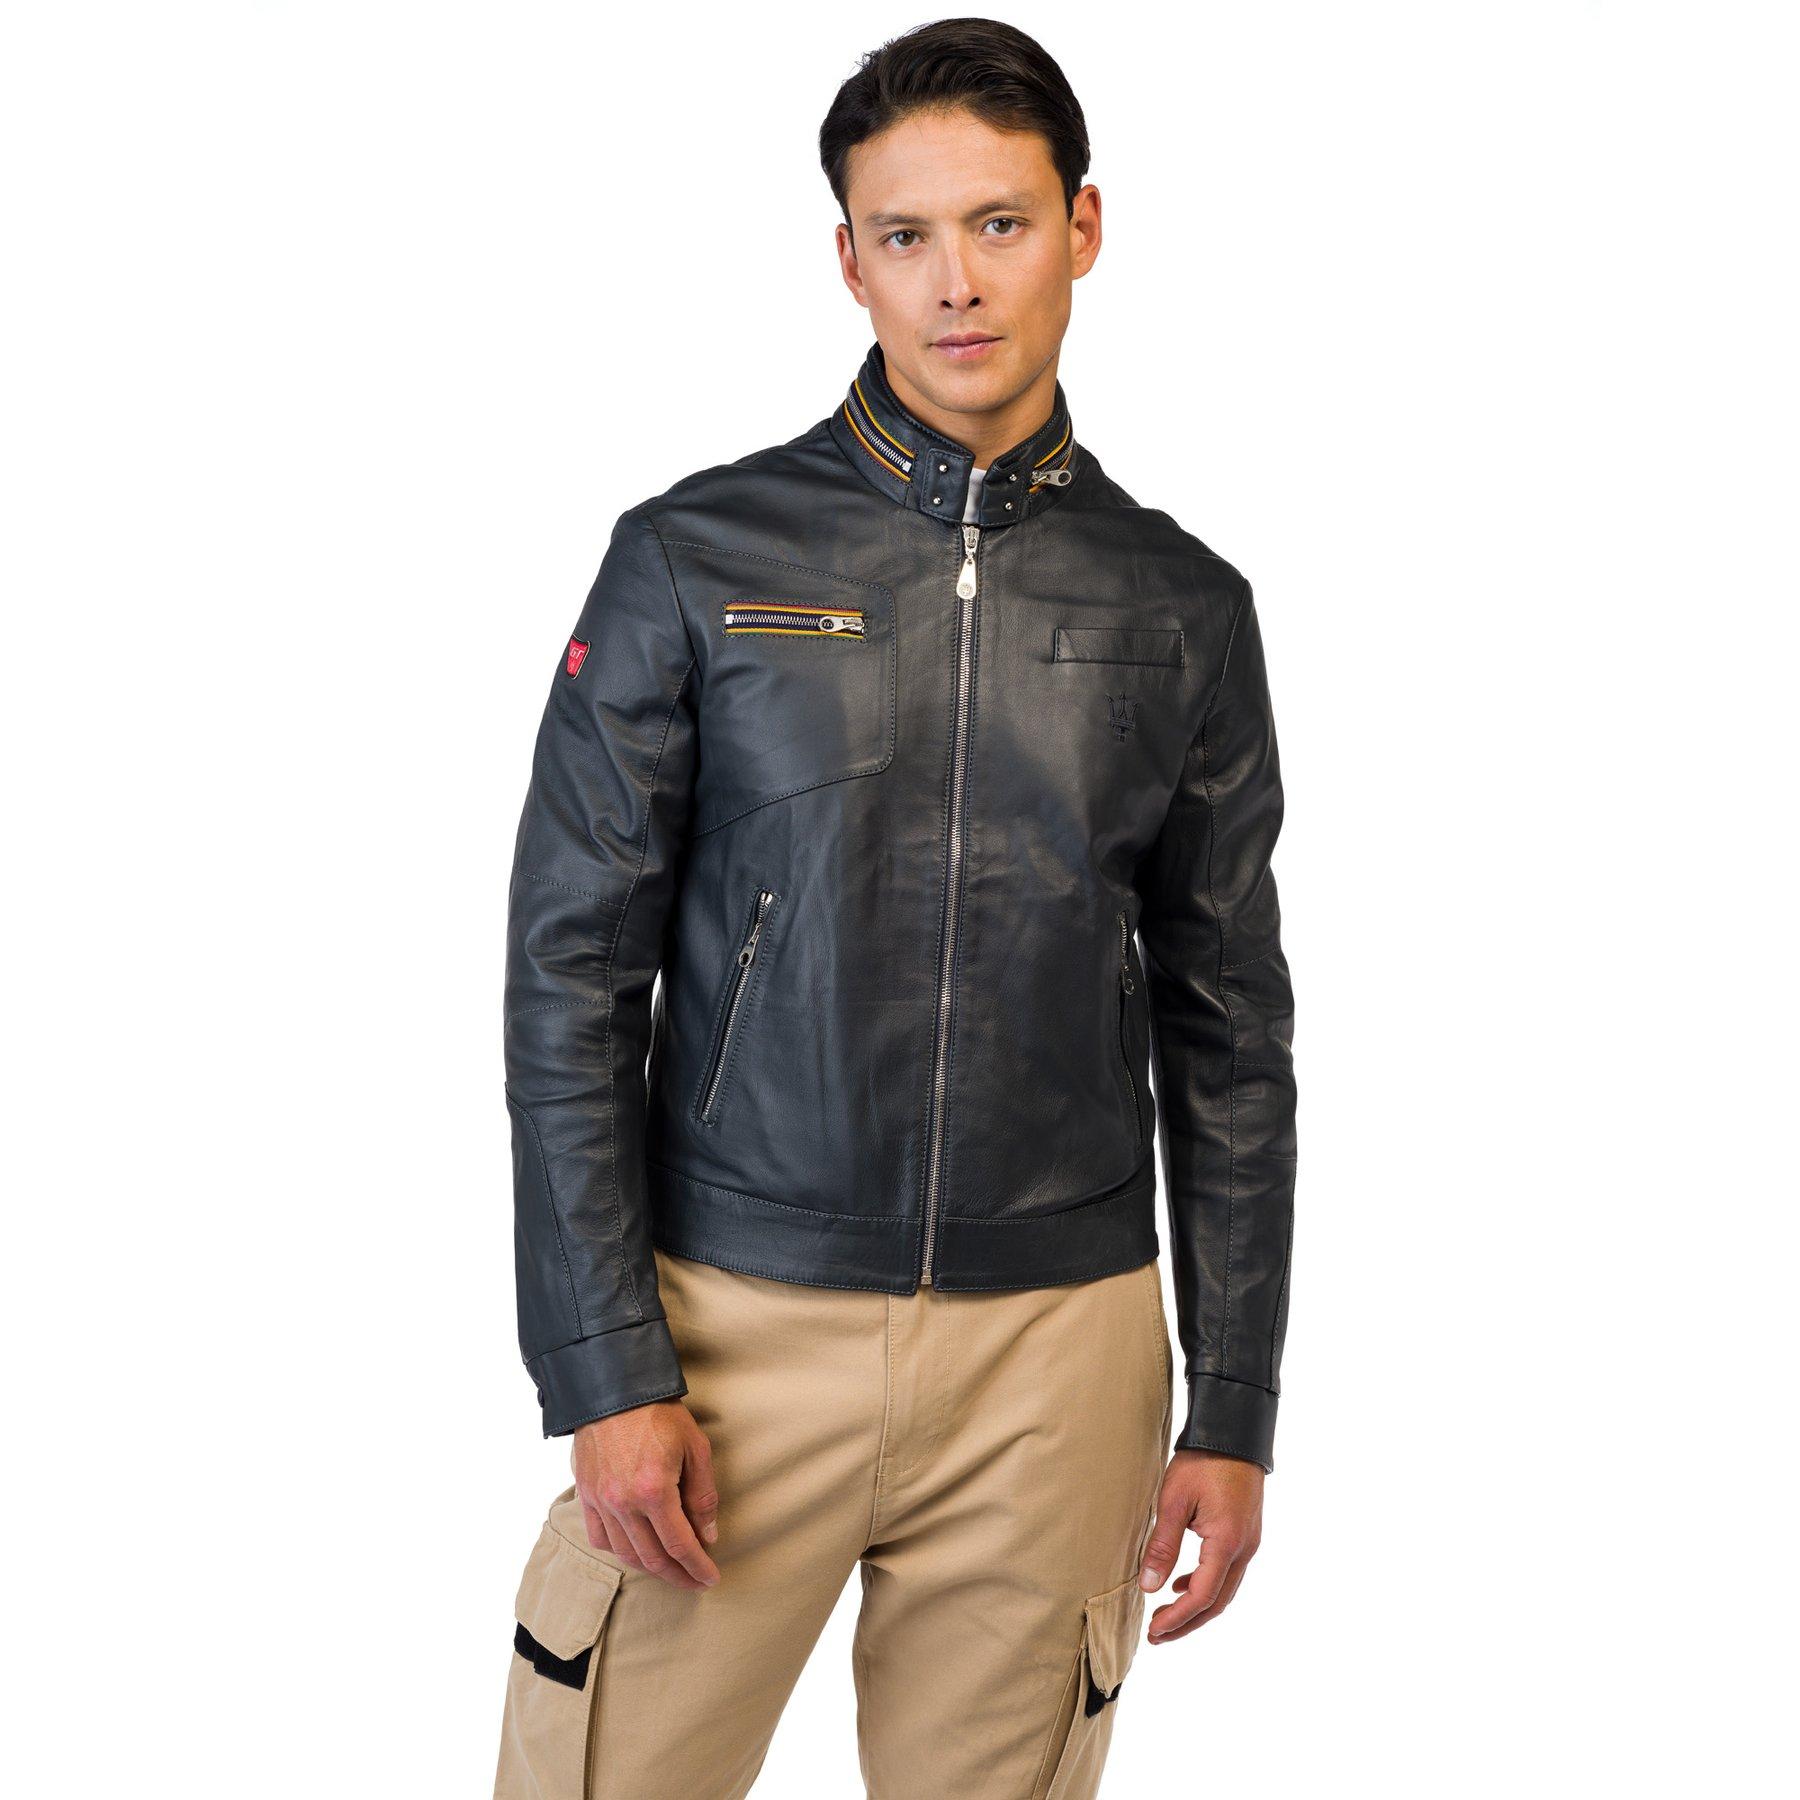 Maserati leather jacket